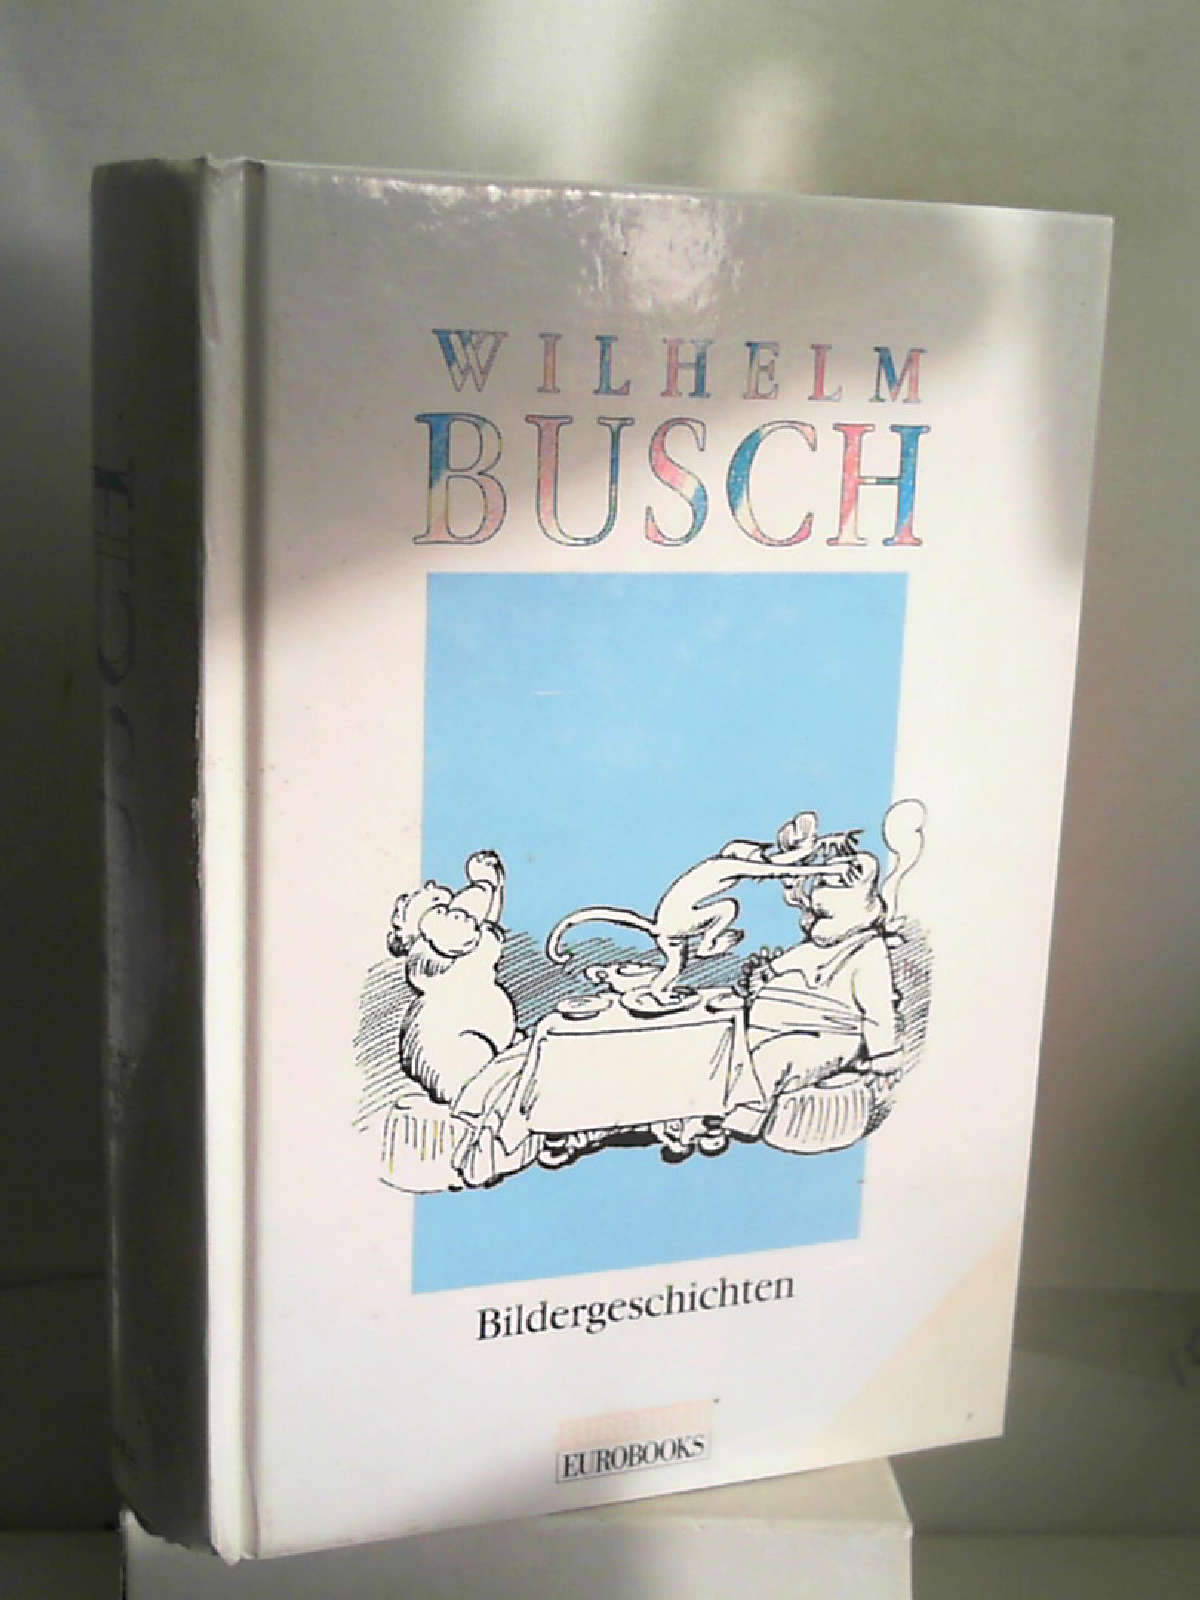 Bildergeschichten [Hardcover] Wilhelm Busch - Wilhelm Busch